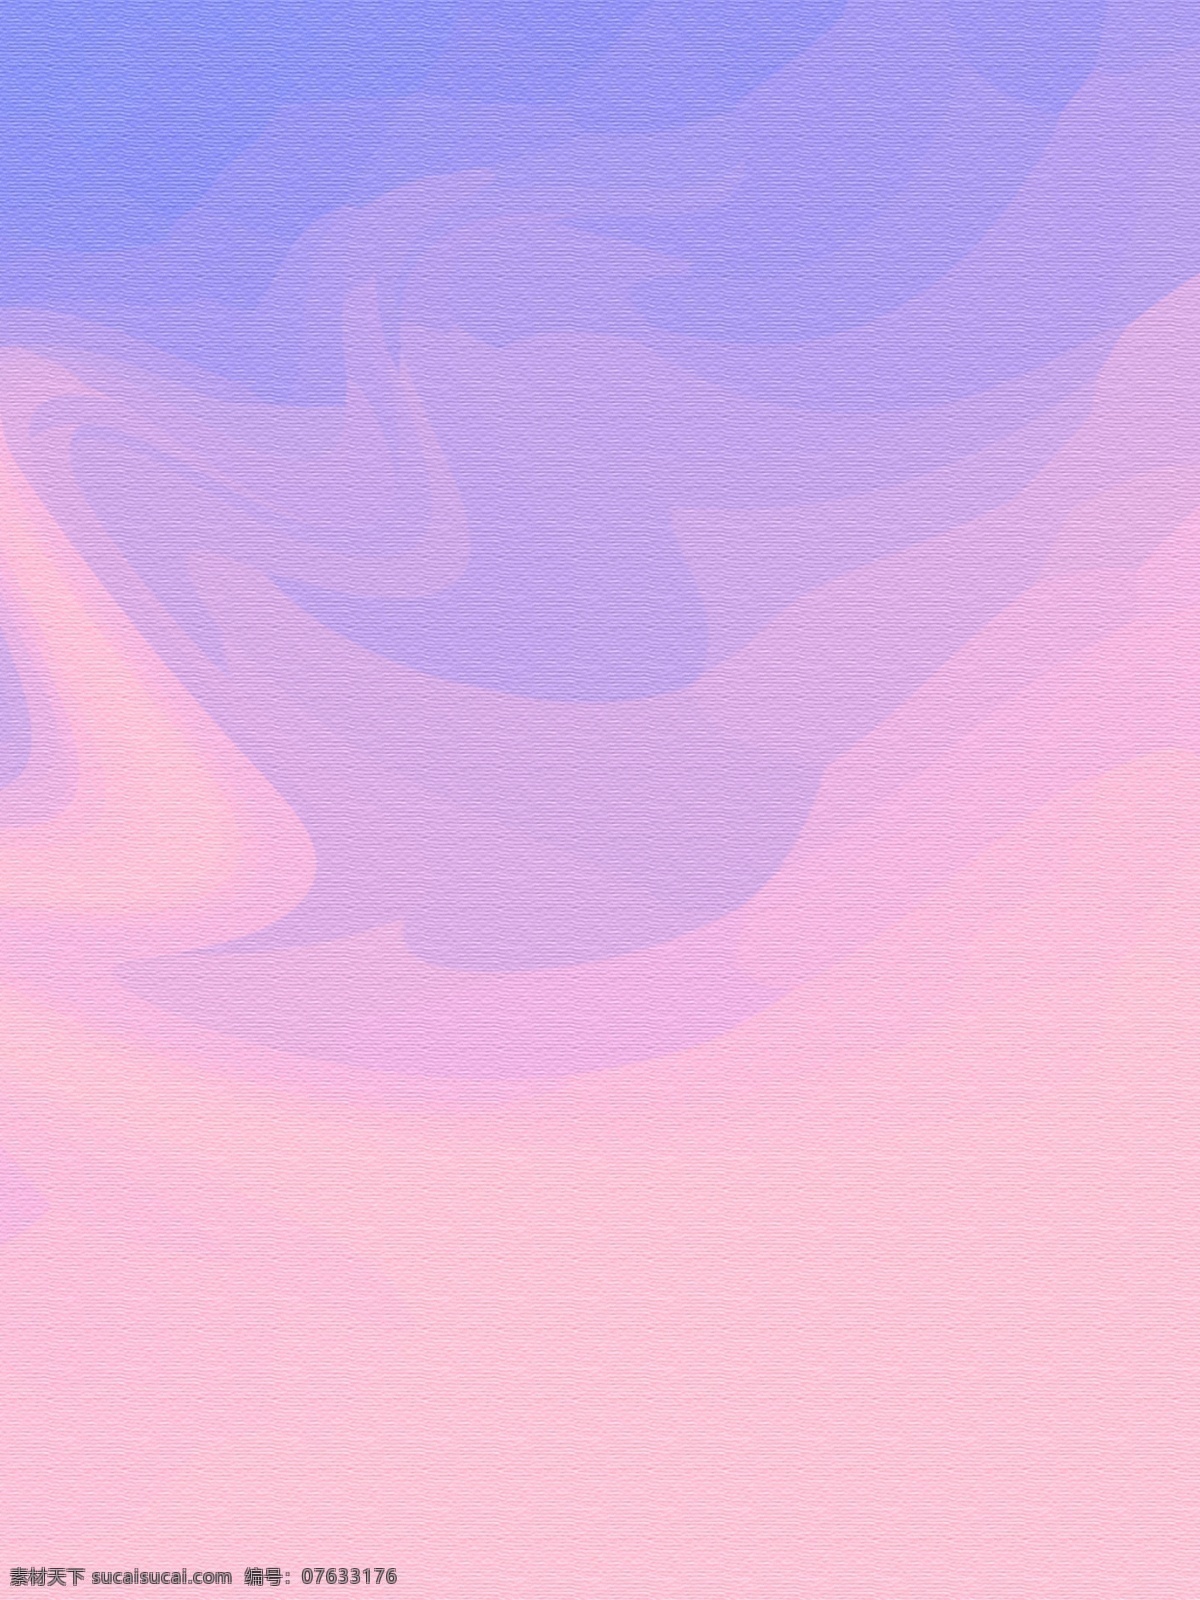 紫色 梦幻 背景 渐 变色 小 清新 磨砂 质感 广告 紫色背景 渐变 唯美 小清新 纯色 纸质感 磨砂质感